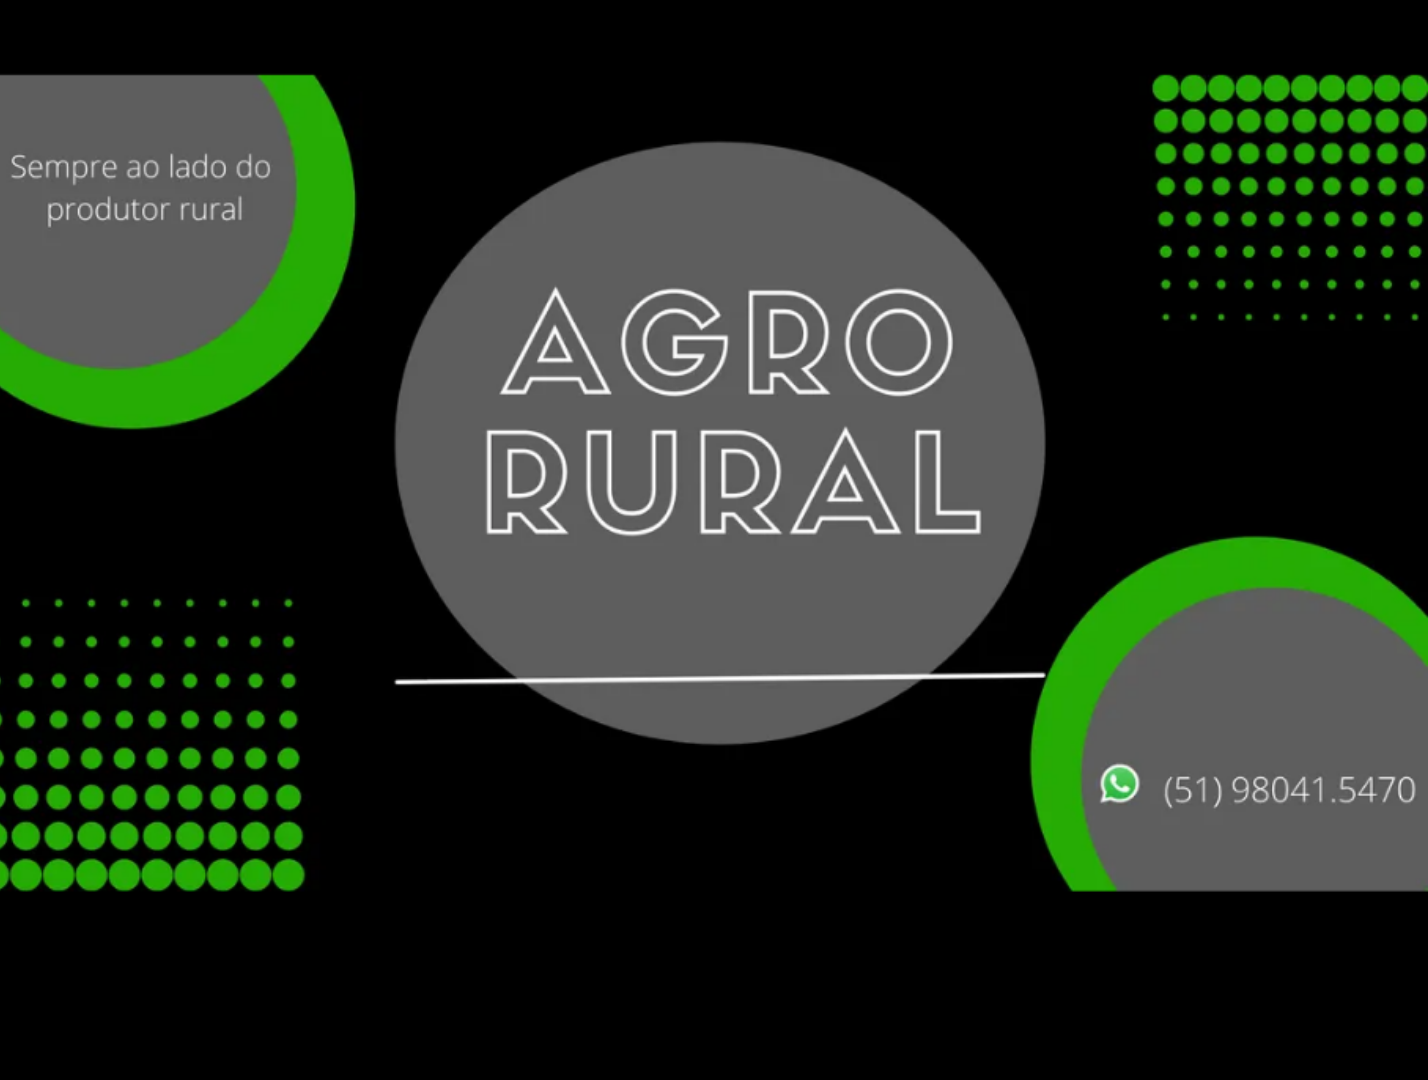 Agro Rural - Celular